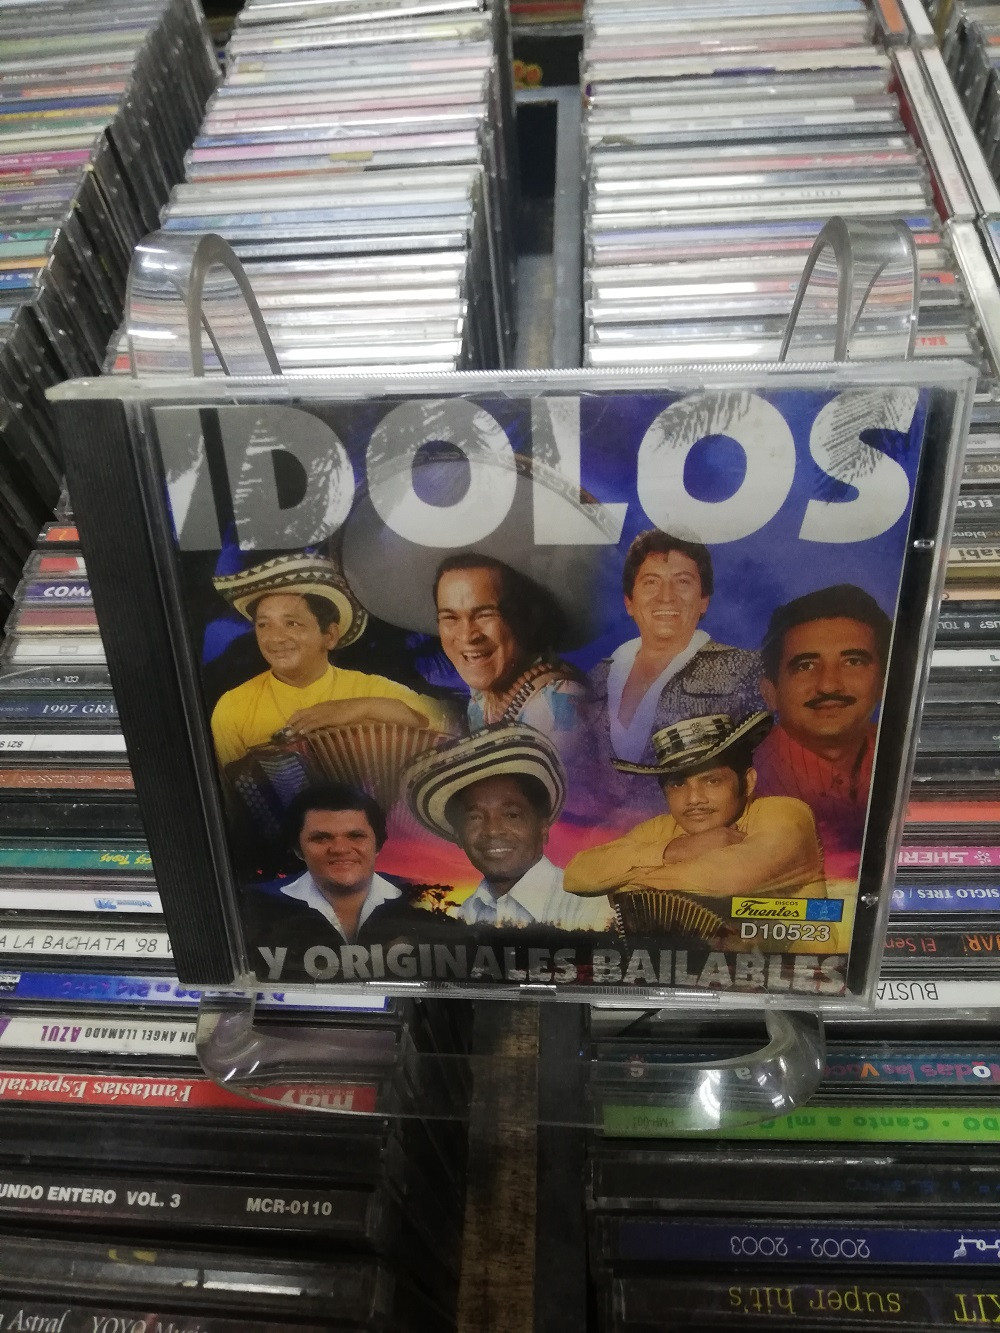 Imagen CD IDOLOS Y ORIGINALES BAILABLES 1